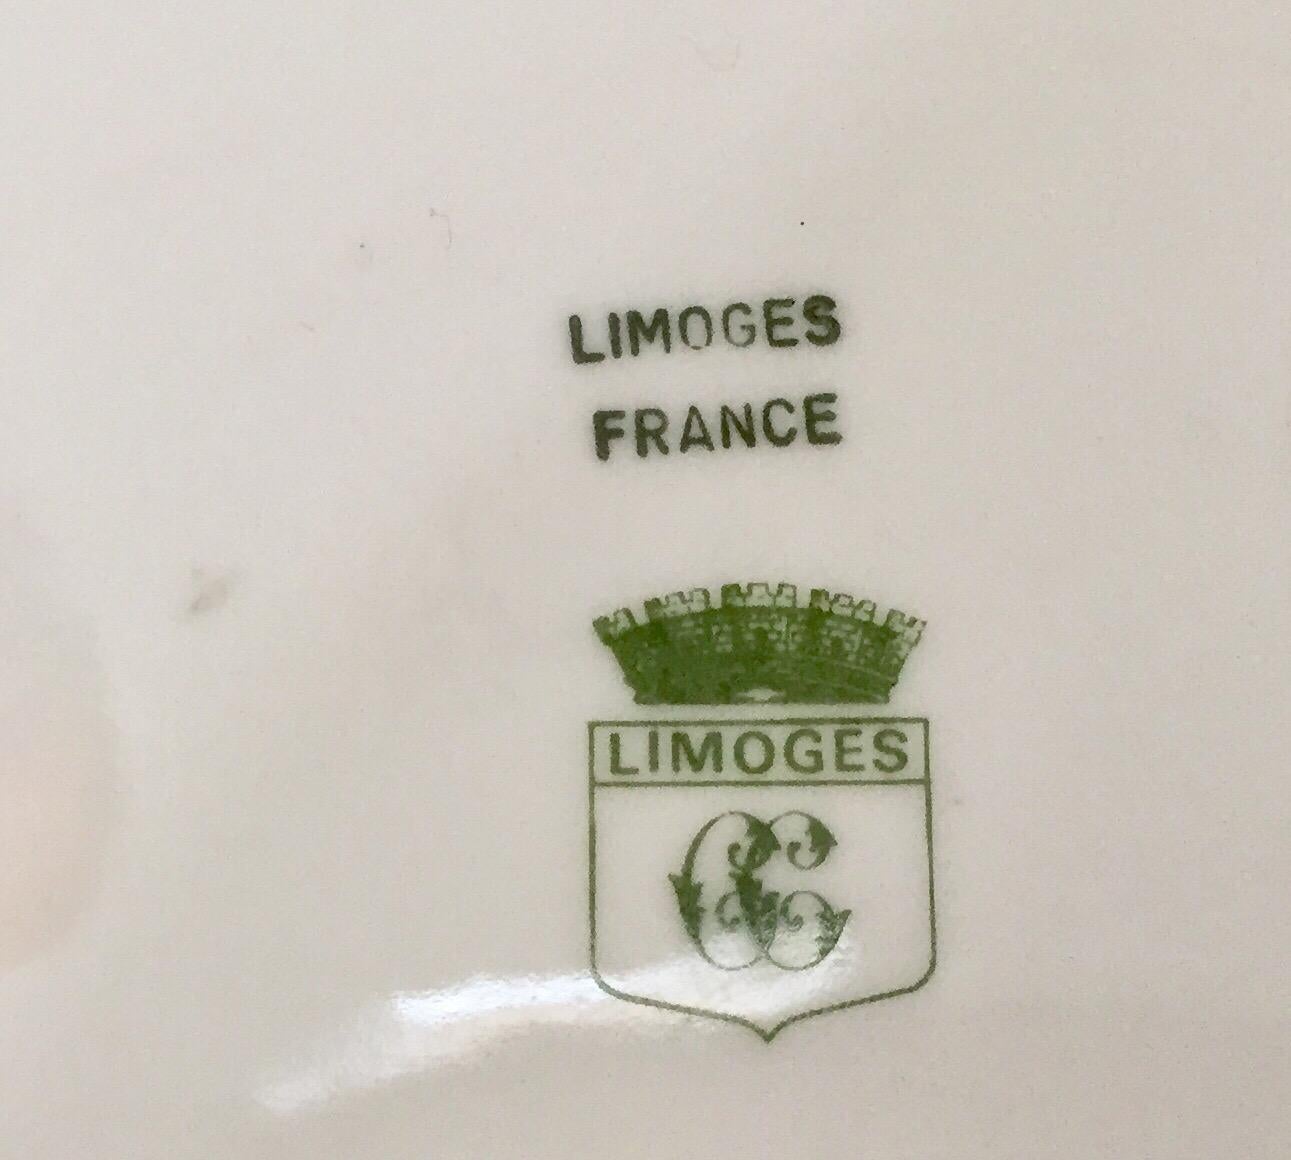 limoges marks green